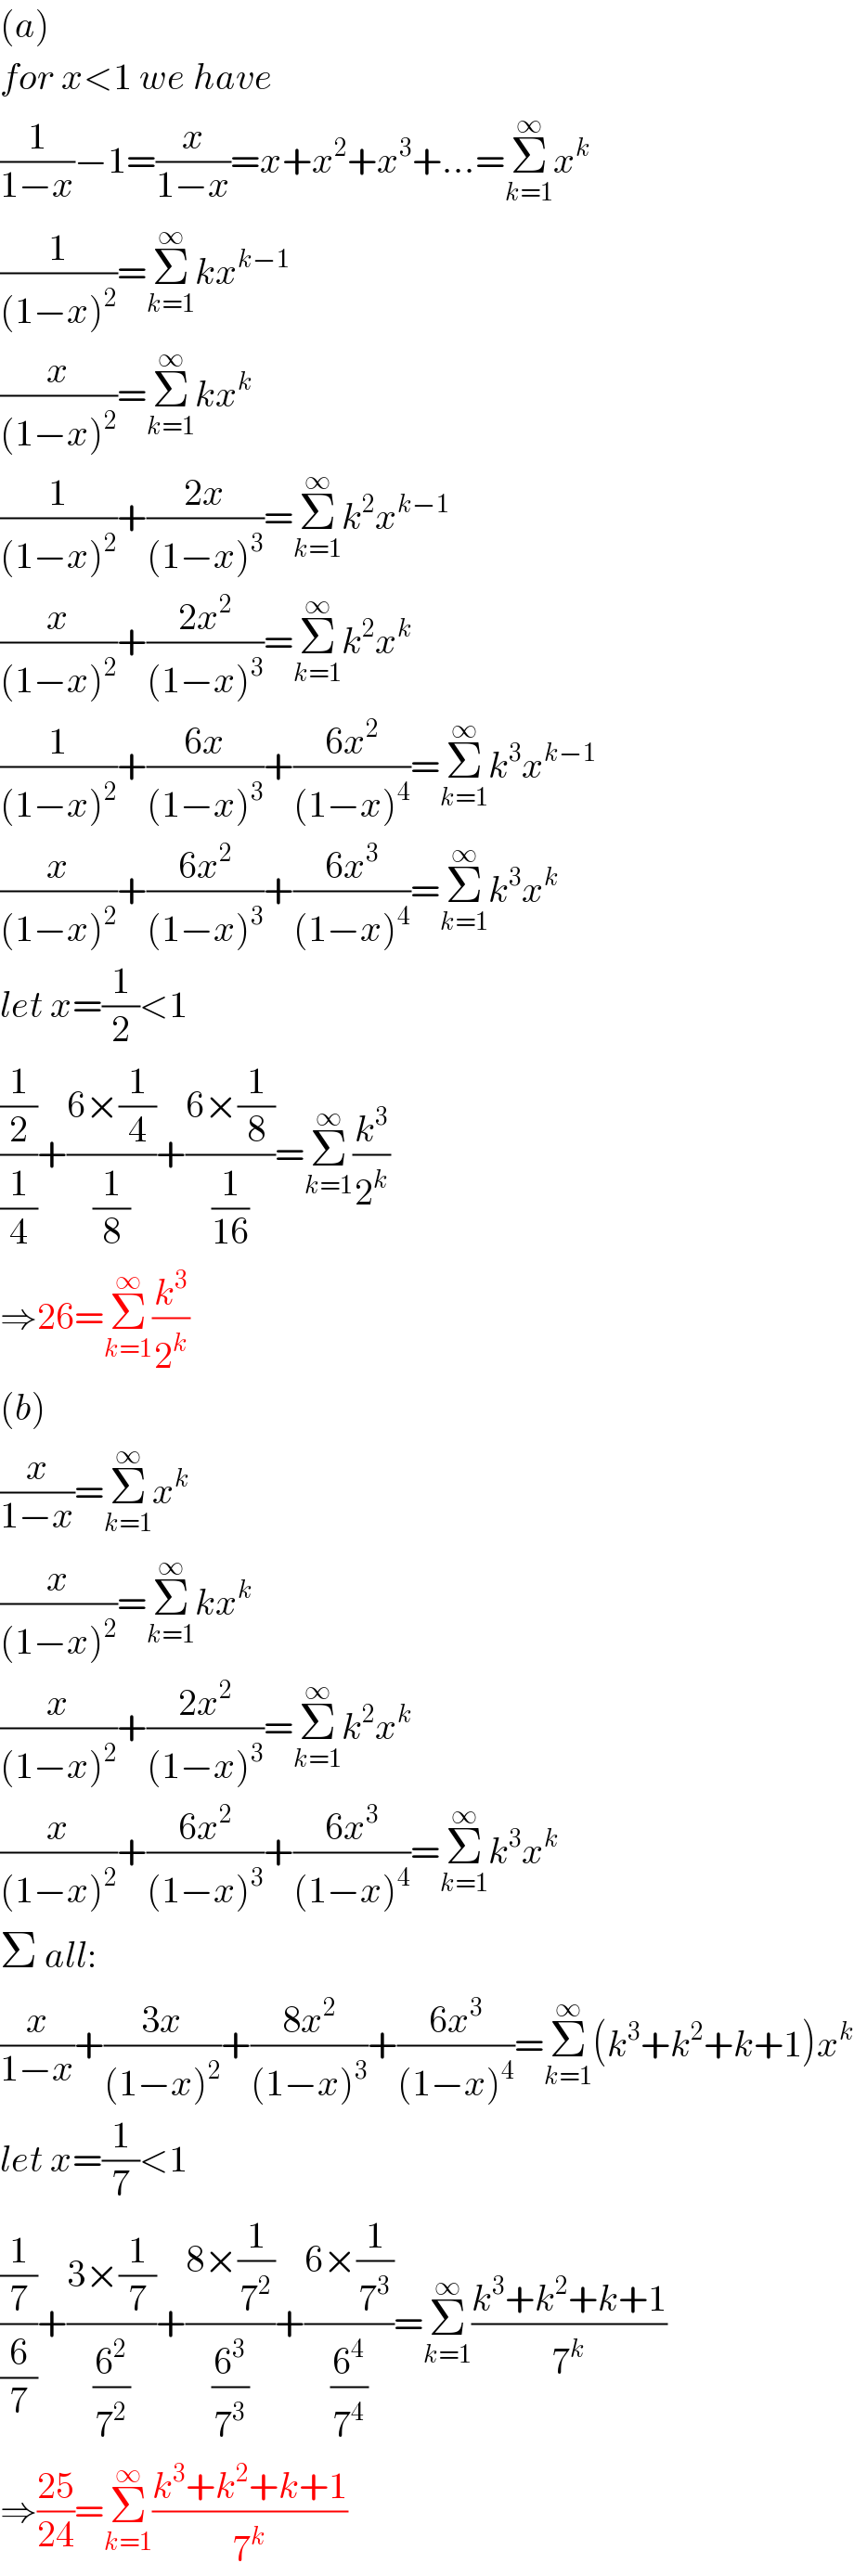 (a)  for x<1 we have  (1/(1−x))−1=(x/(1−x))=x+x^2 +x^3 +...=Σ_(k=1) ^∞ x^k   (1/((1−x)^2 ))=Σ_(k=1) ^∞ kx^(k−1)   (x/((1−x)^2 ))=Σ_(k=1) ^∞ kx^k   (1/((1−x)^2 ))+((2x)/((1−x)^3 ))=Σ_(k=1) ^∞ k^2 x^(k−1)   (x/((1−x)^2 ))+((2x^2 )/((1−x)^3 ))=Σ_(k=1) ^∞ k^2 x^k   (1/((1−x)^2 ))+((6x)/((1−x)^3 ))+((6x^2 )/((1−x)^4 ))=Σ_(k=1) ^∞ k^3 x^(k−1)   (x/((1−x)^2 ))+((6x^2 )/((1−x)^3 ))+((6x^3 )/((1−x)^4 ))=Σ_(k=1) ^∞ k^3 x^k   let x=(1/2)<1  ((1/2)/(1/4))+((6×(1/4))/(1/8))+((6×(1/8))/(1/(16)))=Σ_(k=1) ^∞ (k^3 /2^k )  ⇒26=Σ_(k=1) ^∞ (k^3 /2^k )  (b)  (x/(1−x))=Σ_(k=1) ^∞ x^k   (x/((1−x)^2 ))=Σ_(k=1) ^∞ kx^k   (x/((1−x)^2 ))+((2x^2 )/((1−x)^3 ))=Σ_(k=1) ^∞ k^2 x^k   (x/((1−x)^2 ))+((6x^2 )/((1−x)^3 ))+((6x^3 )/((1−x)^4 ))=Σ_(k=1) ^∞ k^3 x^k   Σ all:  (x/(1−x))+((3x)/((1−x)^2 ))+((8x^2 )/((1−x)^3 ))+((6x^3 )/((1−x)^4 ))=Σ_(k=1) ^∞ (k^3 +k^2 +k+1)x^k   let x=(1/7)<1  ((1/7)/(6/7))+((3×(1/7))/(6^2 /7^2 ))+((8×(1/7^2 ))/(6^3 /7^3 ))+((6×(1/7^3 ))/(6^4 /7^4 ))=Σ_(k=1) ^∞ ((k^3 +k^2 +k+1)/7^k )  ⇒((25)/(24))=Σ_(k=1) ^∞ ((k^3 +k^2 +k+1)/7^k )  